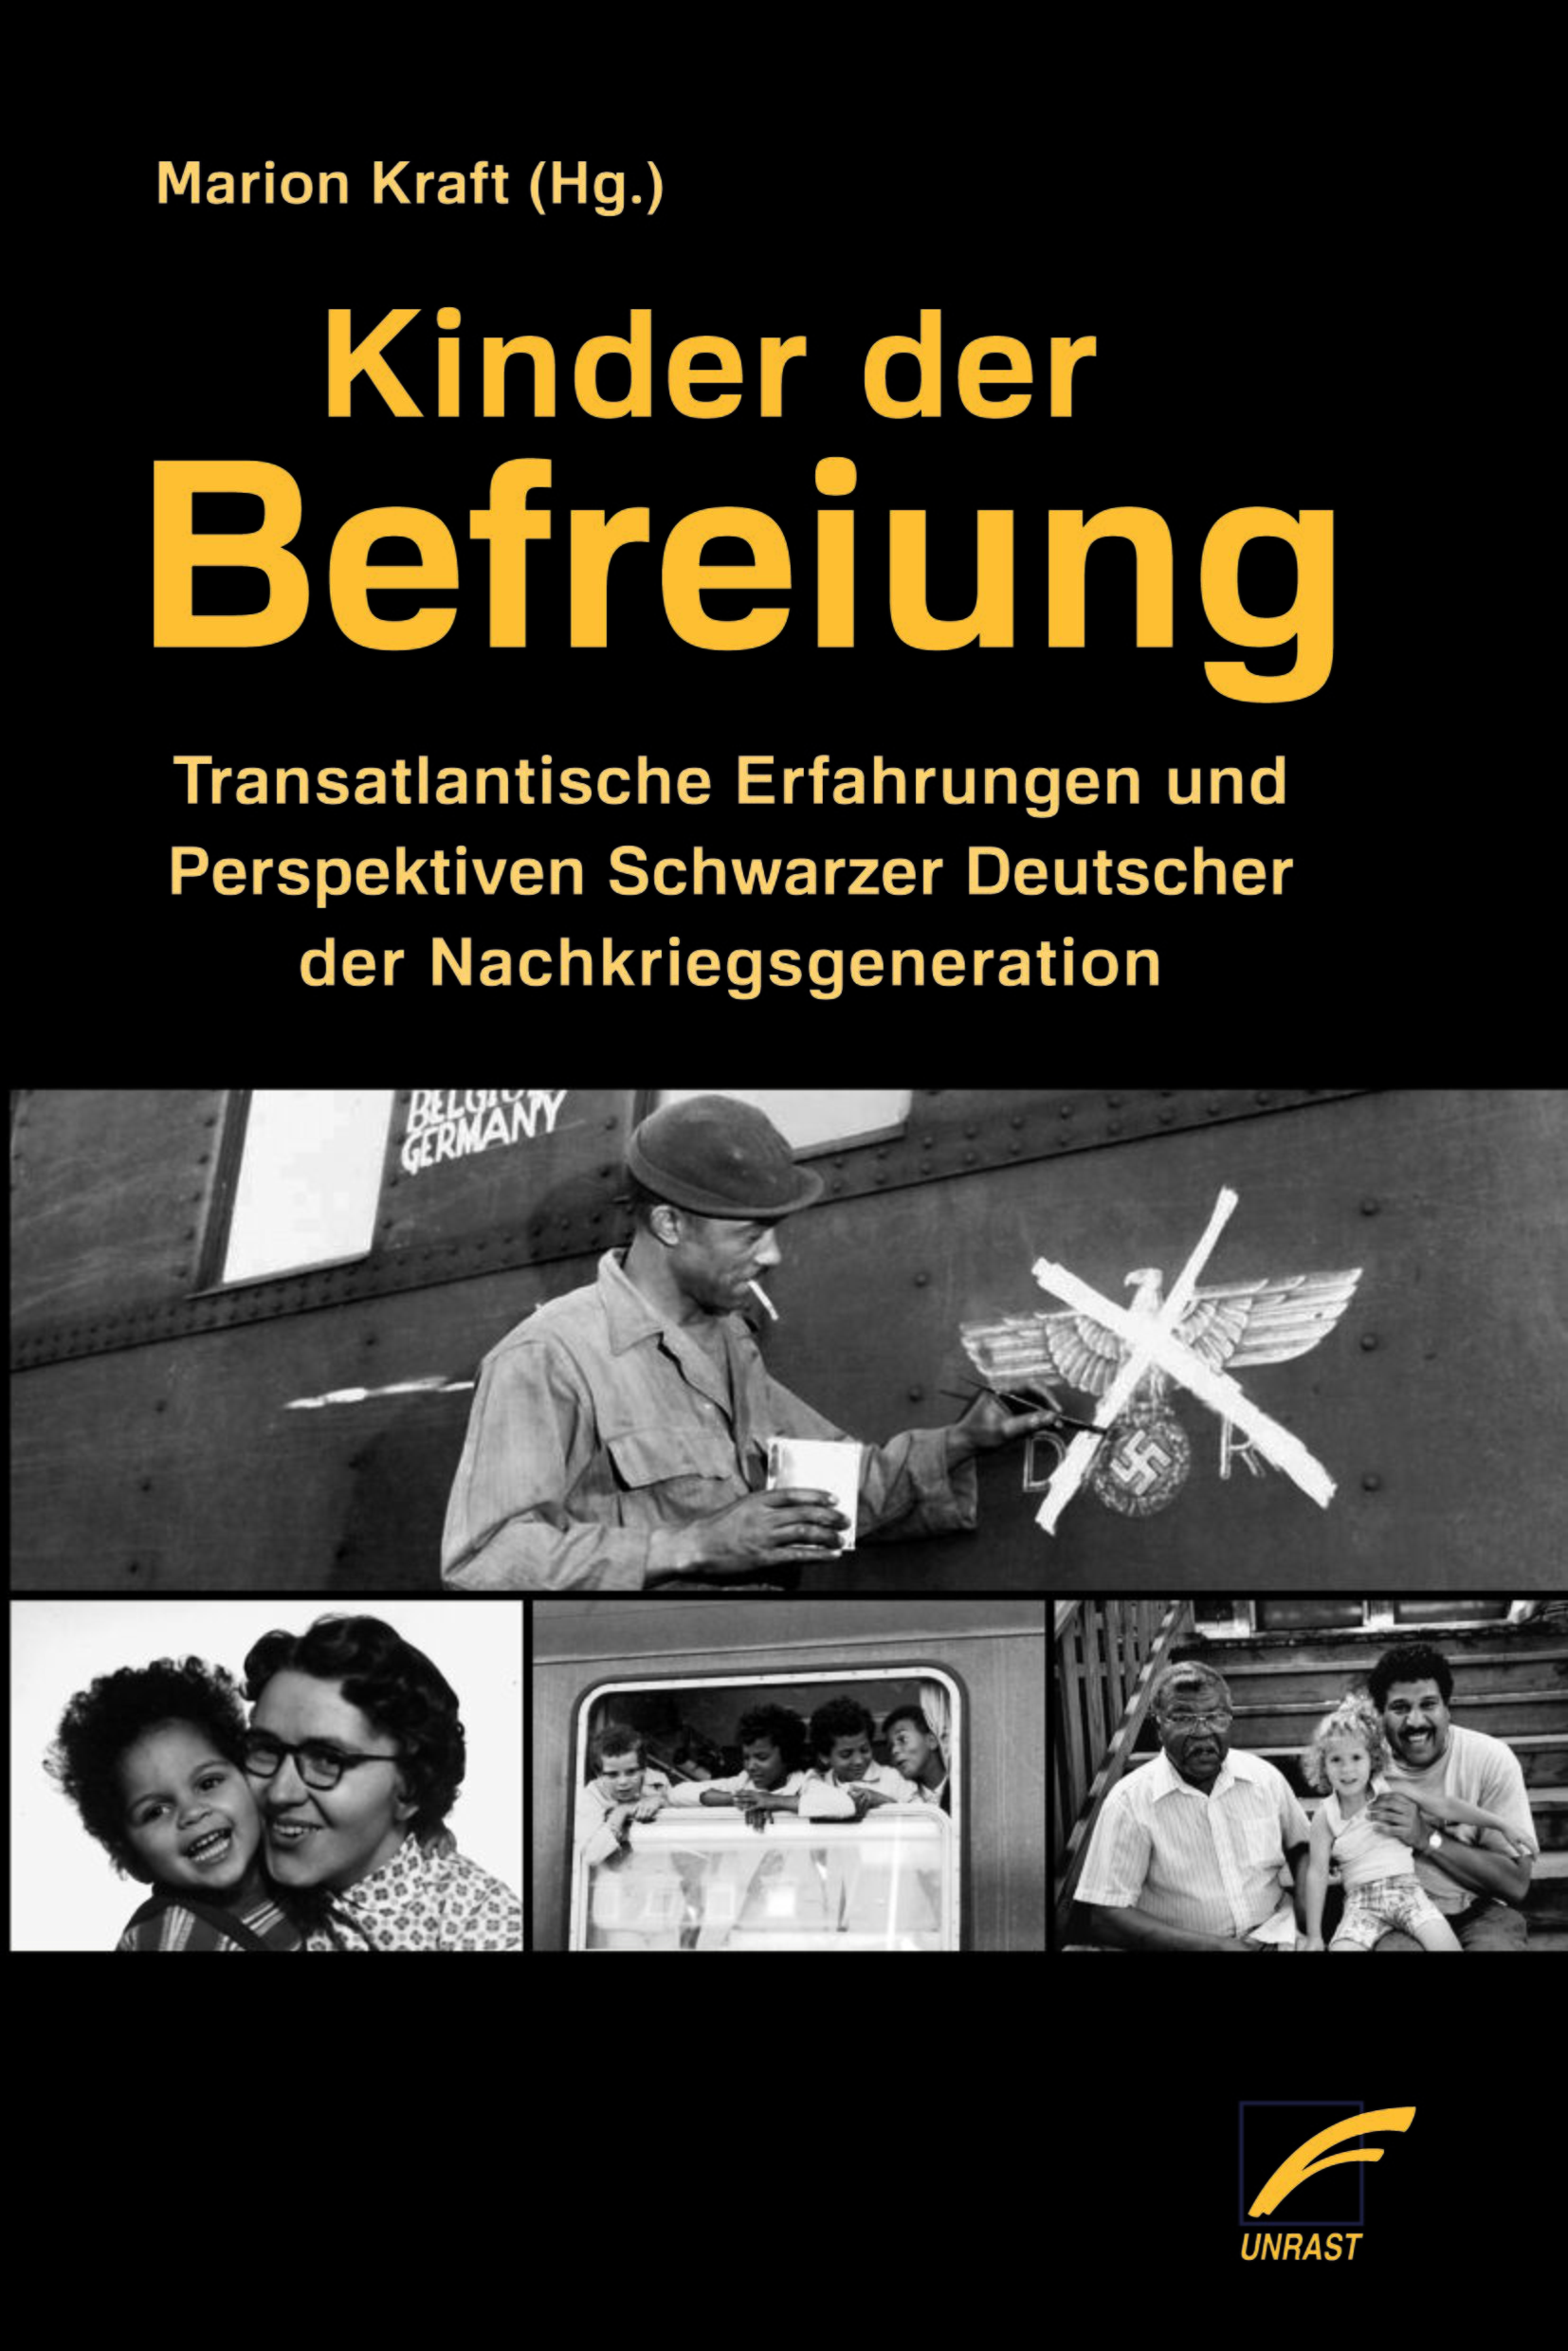 Na antologia ”Kinder der Befreiung”, organizada por Marion Kraft, pessoas implicadas fazem relatos sobre suas vidas e experiências na Alemanha do pós-guerra. 